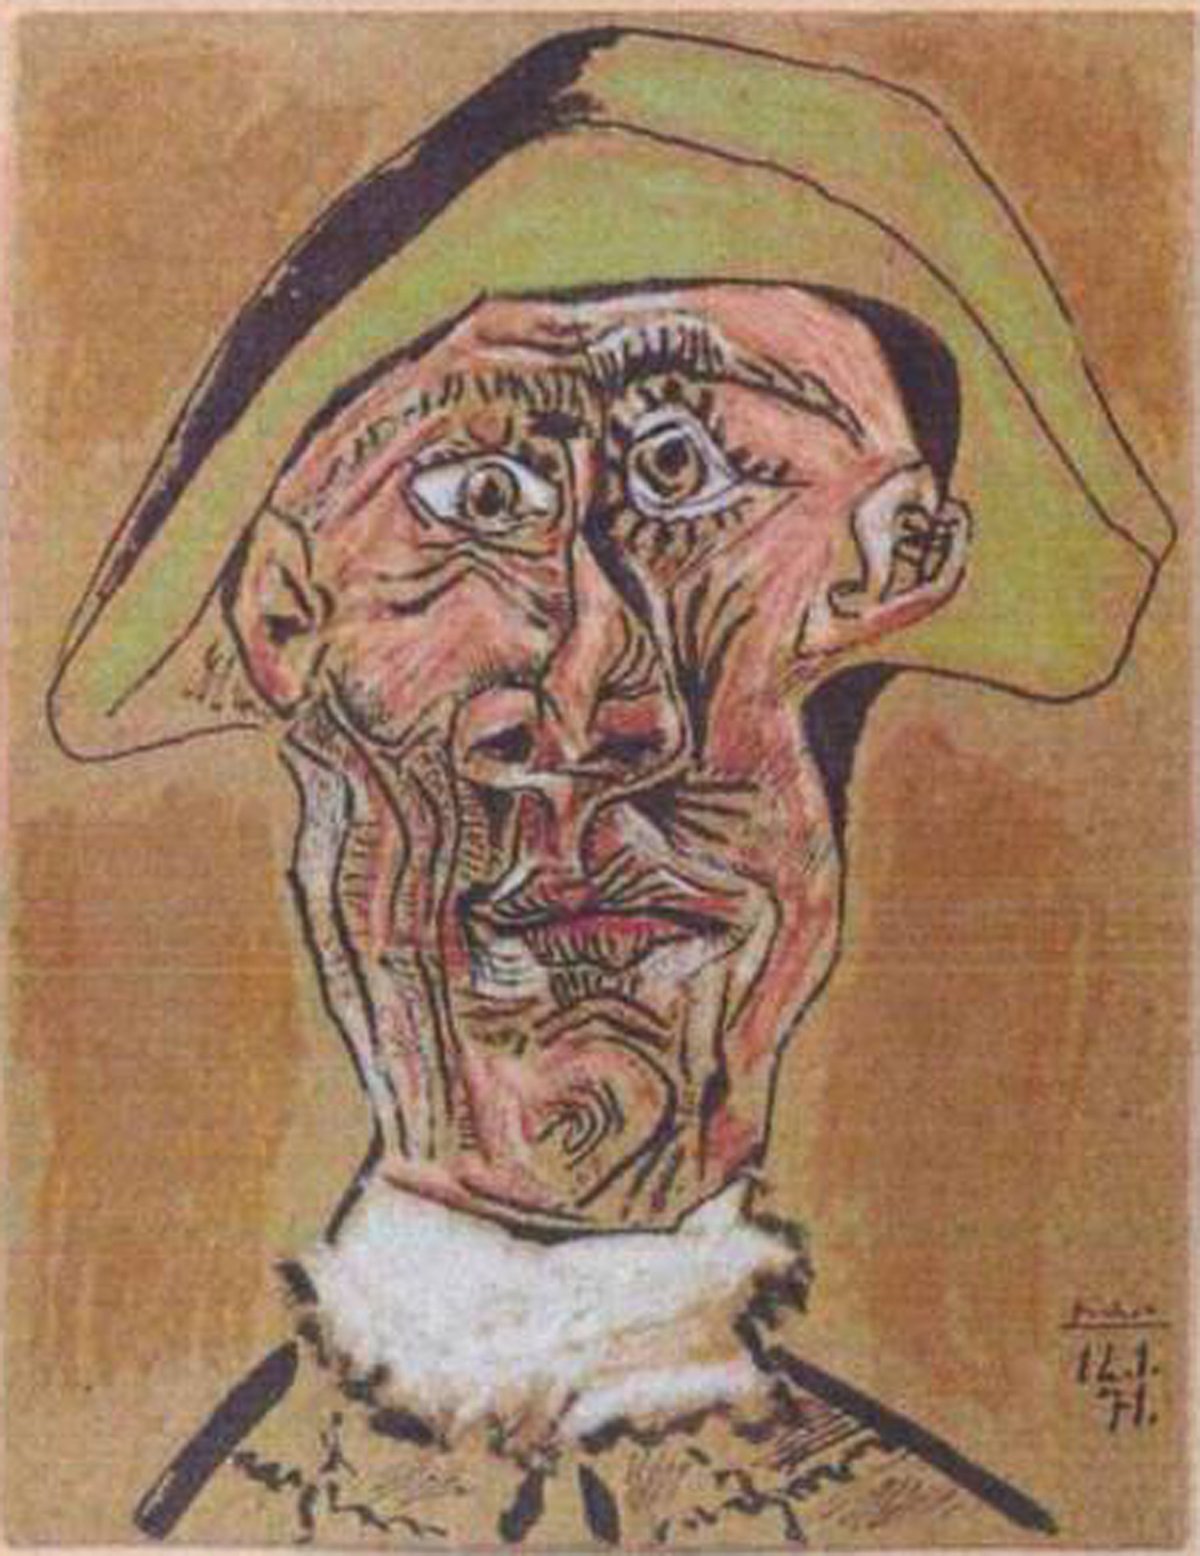 Hlava harlekýna (1971), Pablo Picasso, 800 mil. Kč